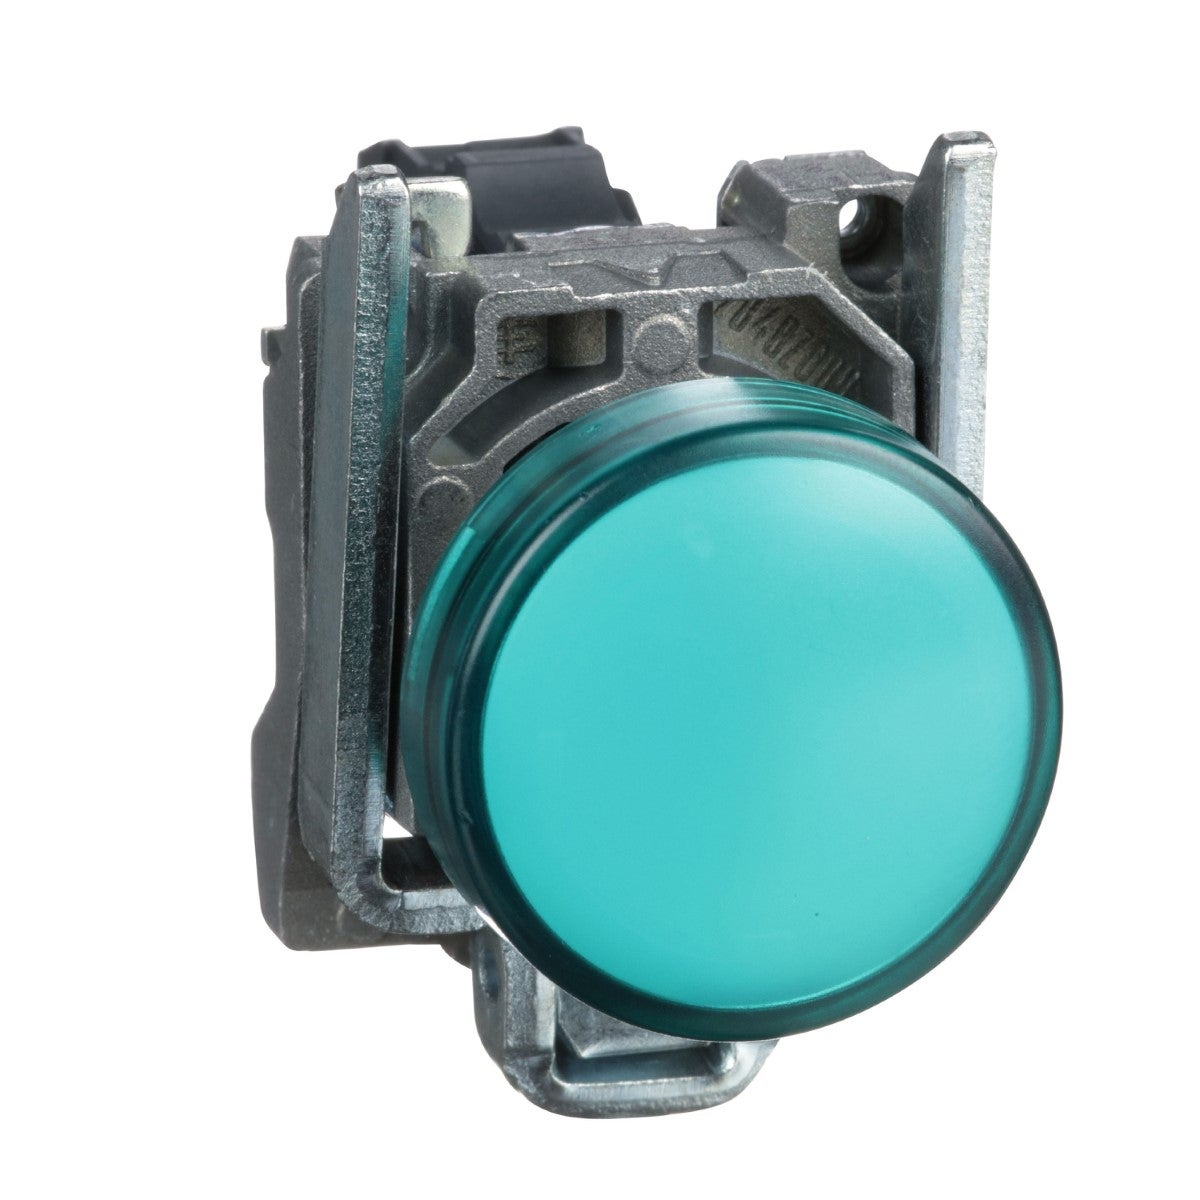 Pilot light, metal, green, Ã˜22, plain lens with integral LED, 24 V AC/DC